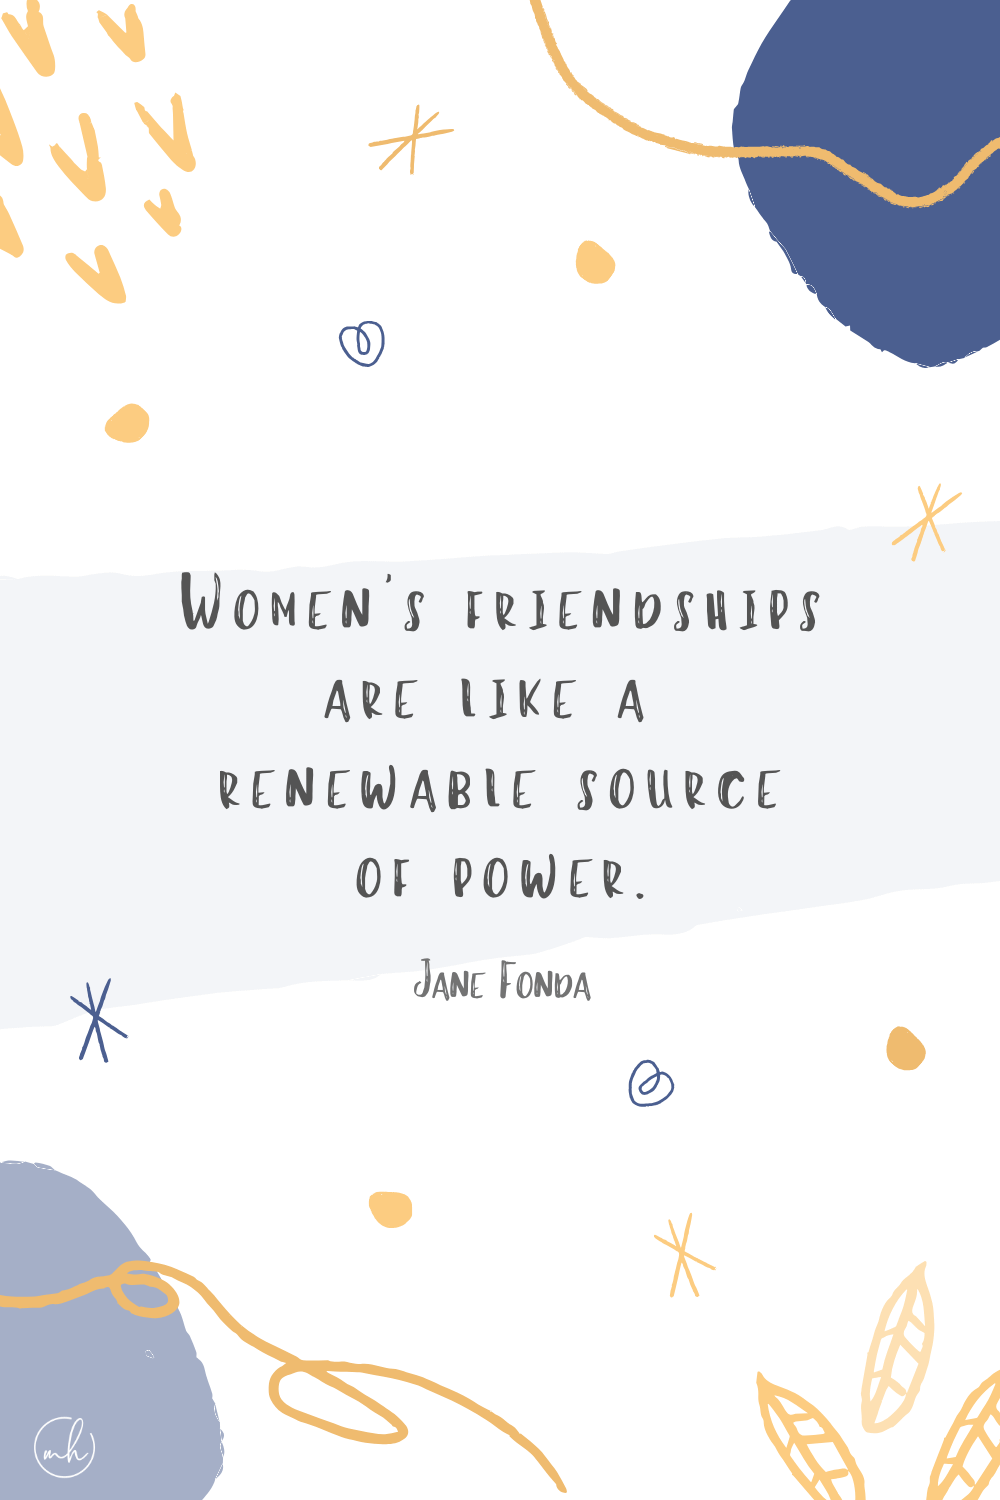 "Women's friendships are like a renewable source of power" – Jane Fonda